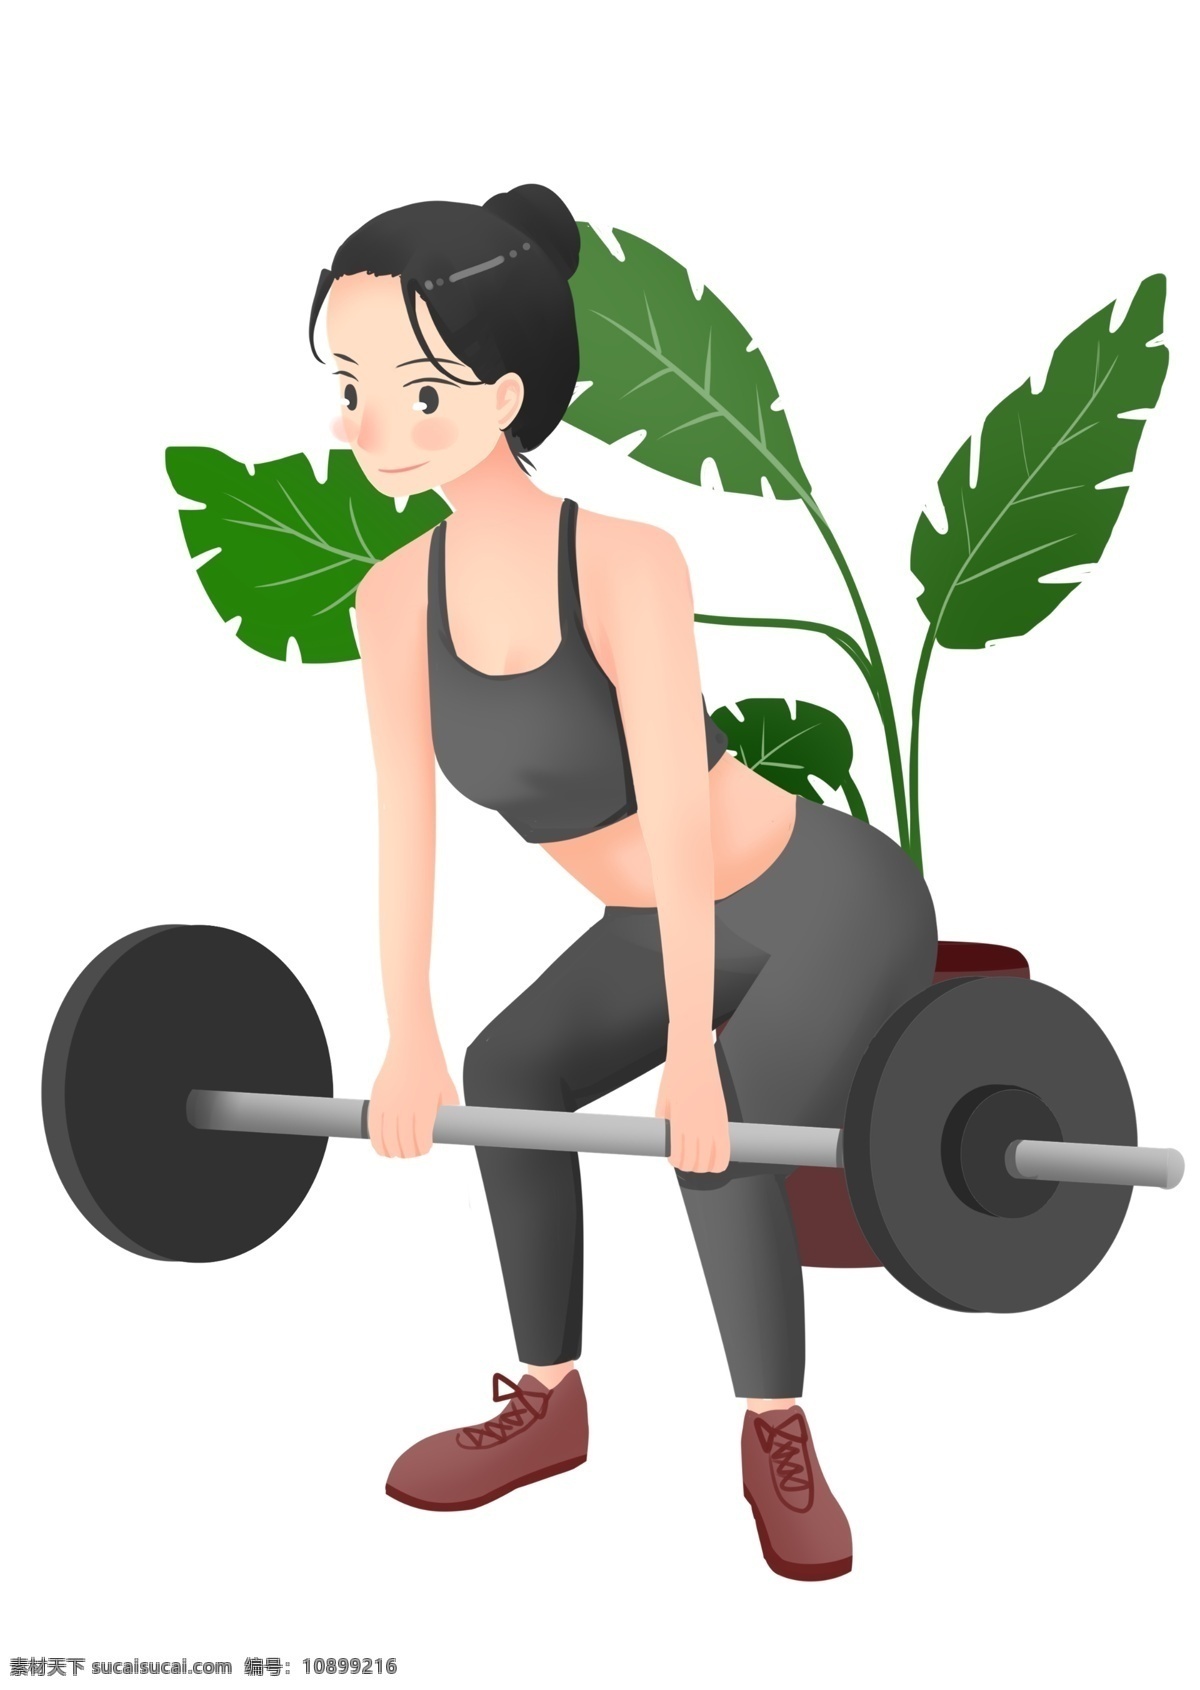 举 杠铃 健身 女孩 绿色的叶子 健身运动 卡通插画 体育运动 活动筋骨 加强锻炼 举杠铃健身